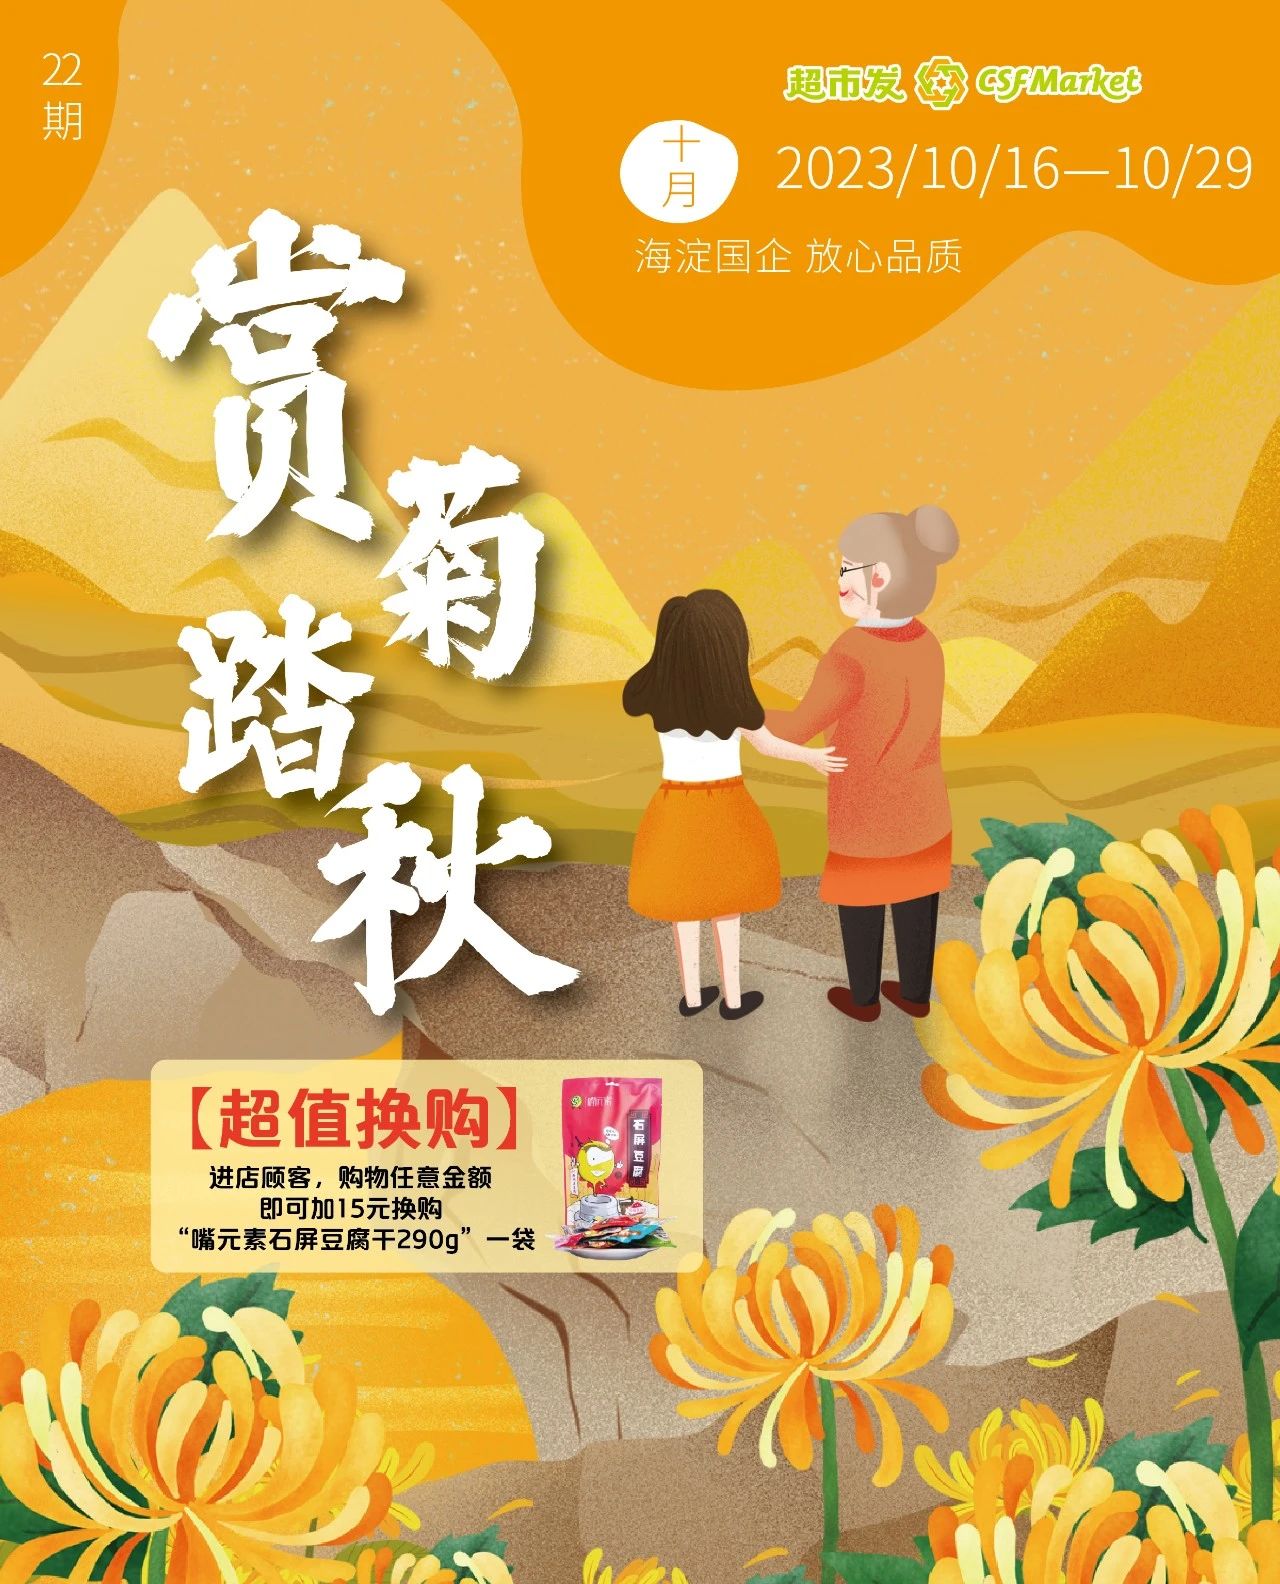 北京超市发超市促销海报（第22期）